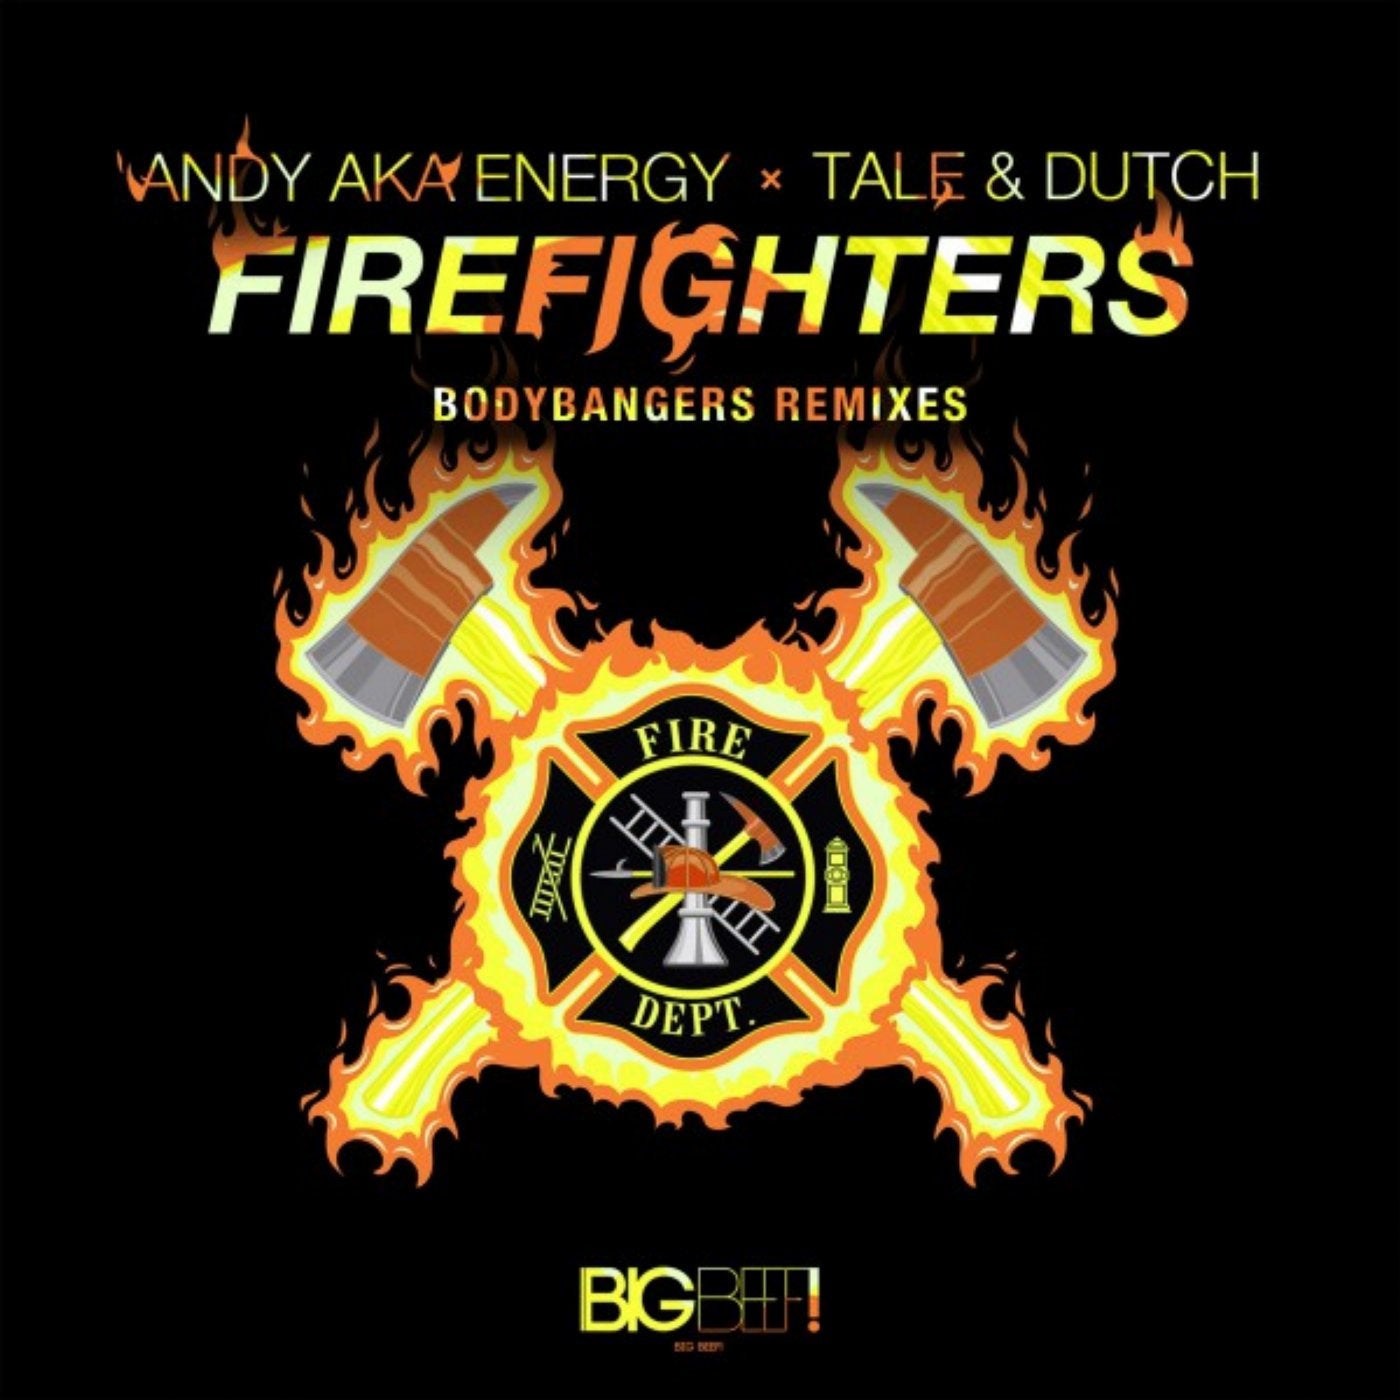 Firefighters (Bodybangers Remixes)